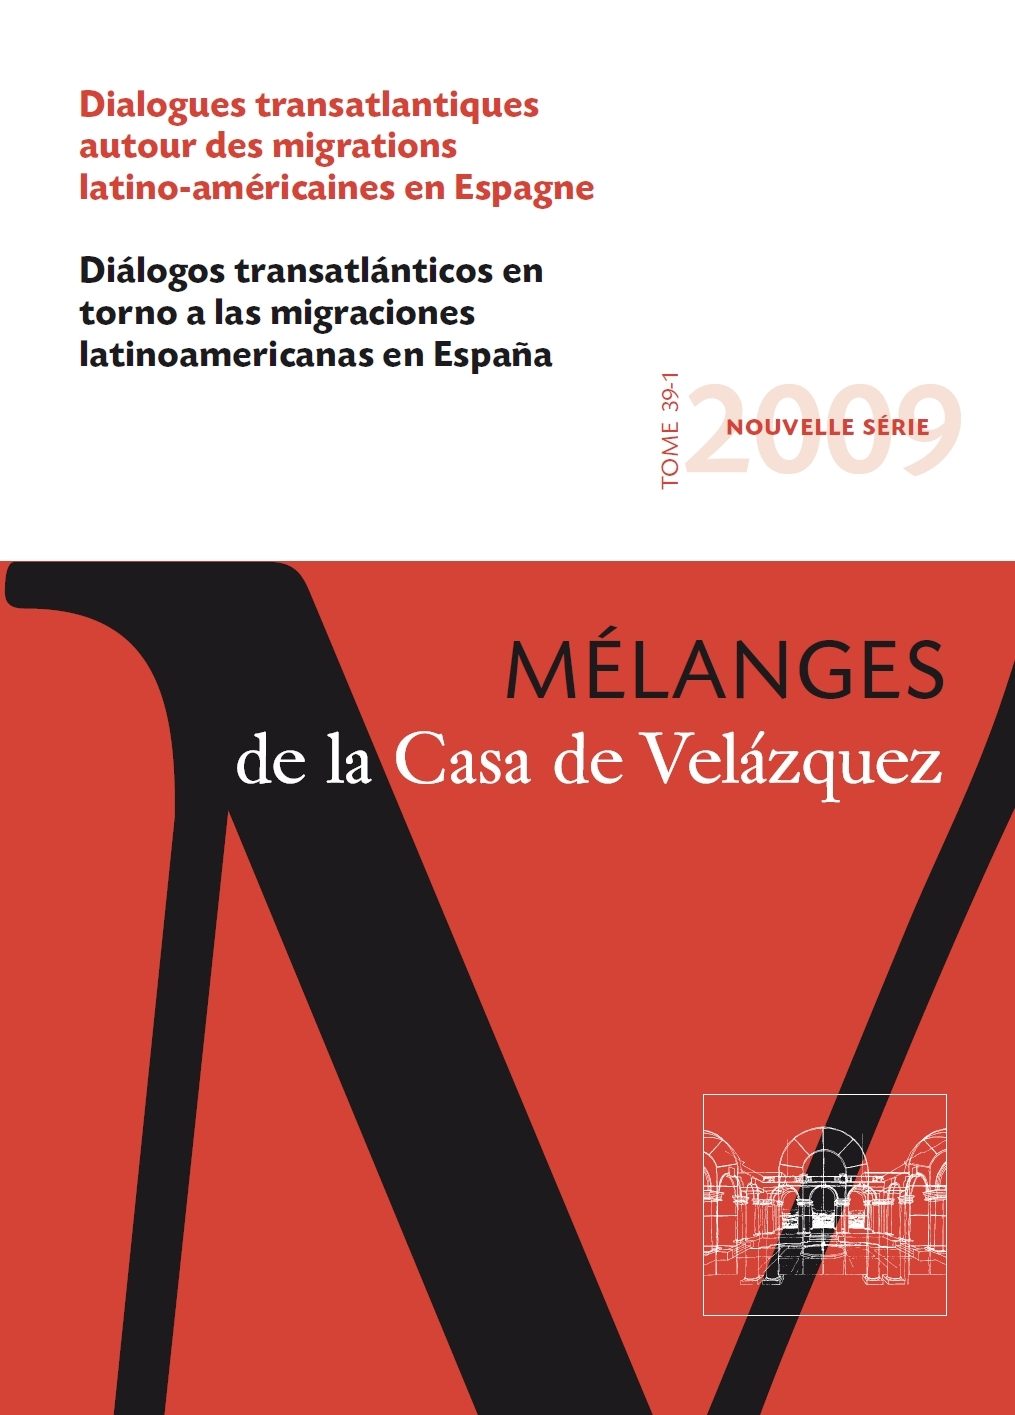 Diálogos transatlánticos en torno a las migraciones latinoamericanas